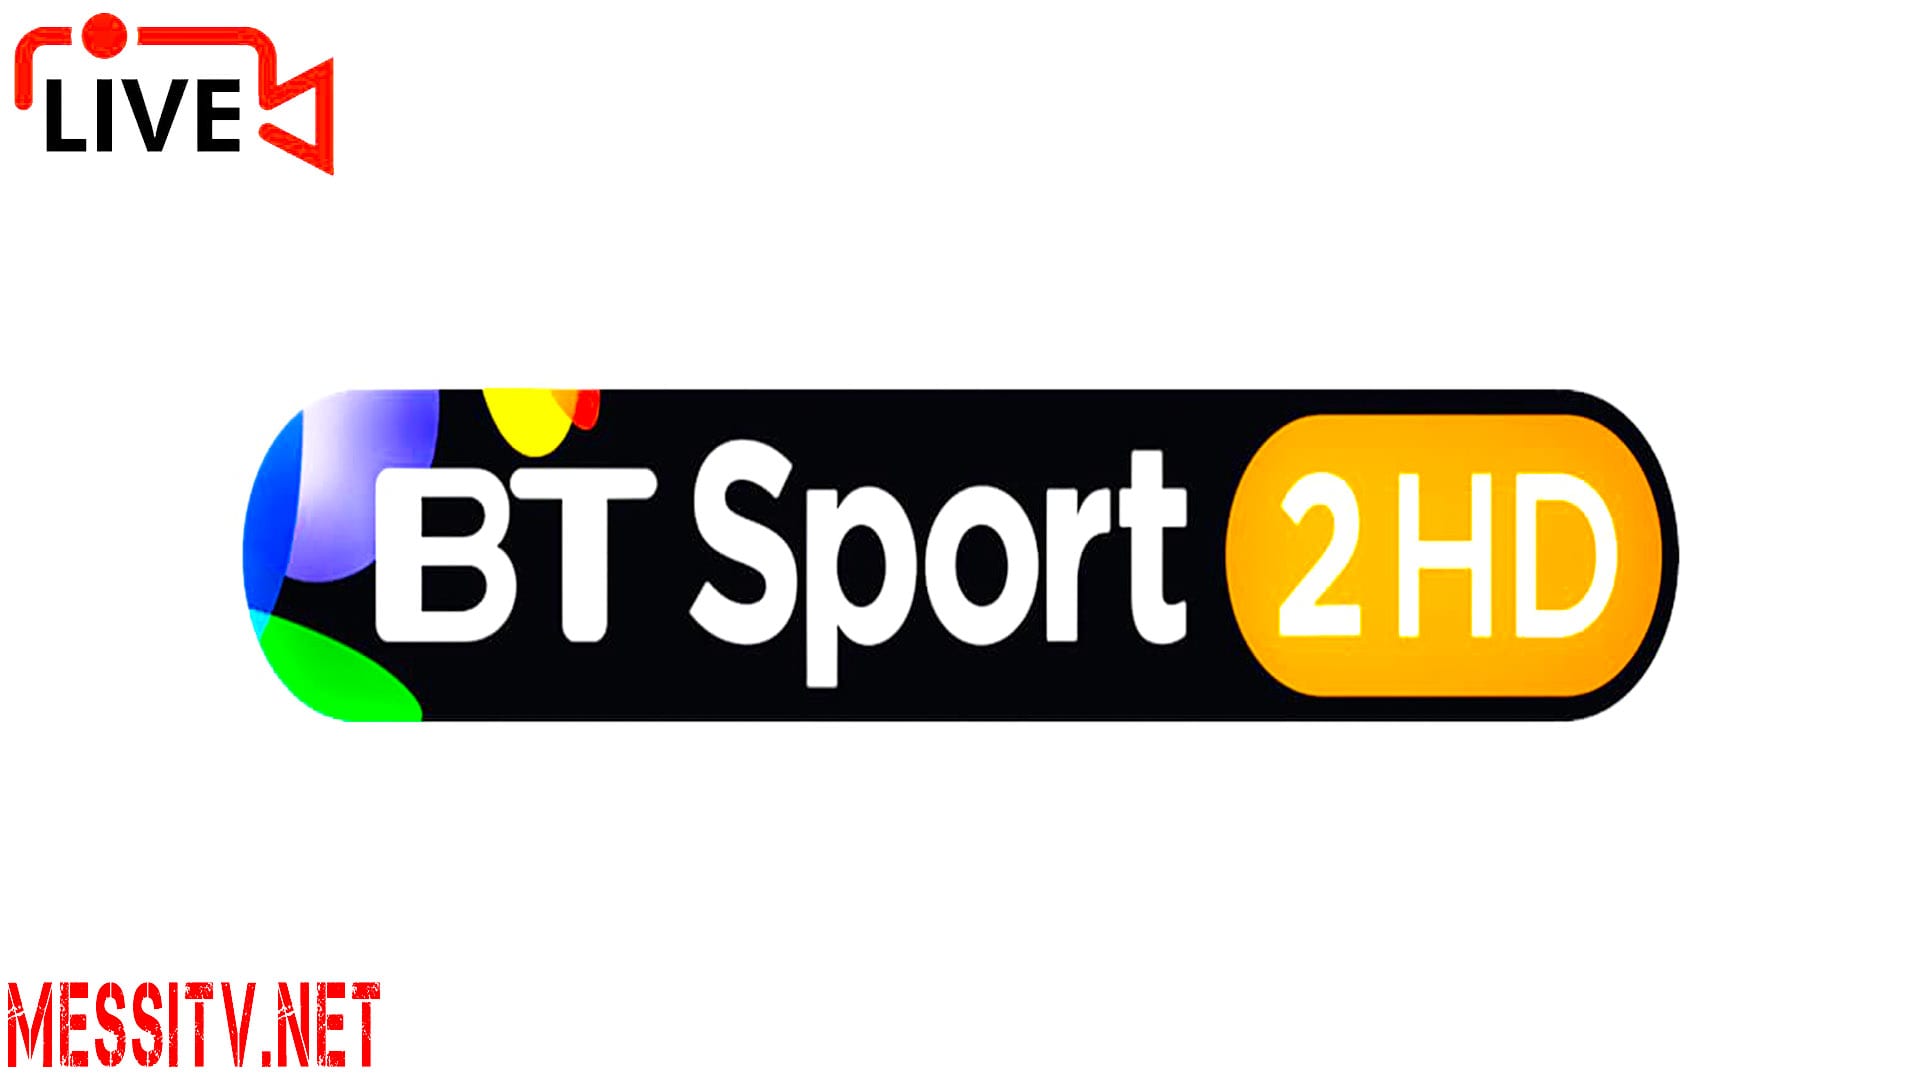 Bt Sport 2 Hd, Bt Sport 1 Hd, Bt Sport 3 Hd, Bt Sport Espn Hd, Watch Tv Live Online, Watch Uk Tv Live Online